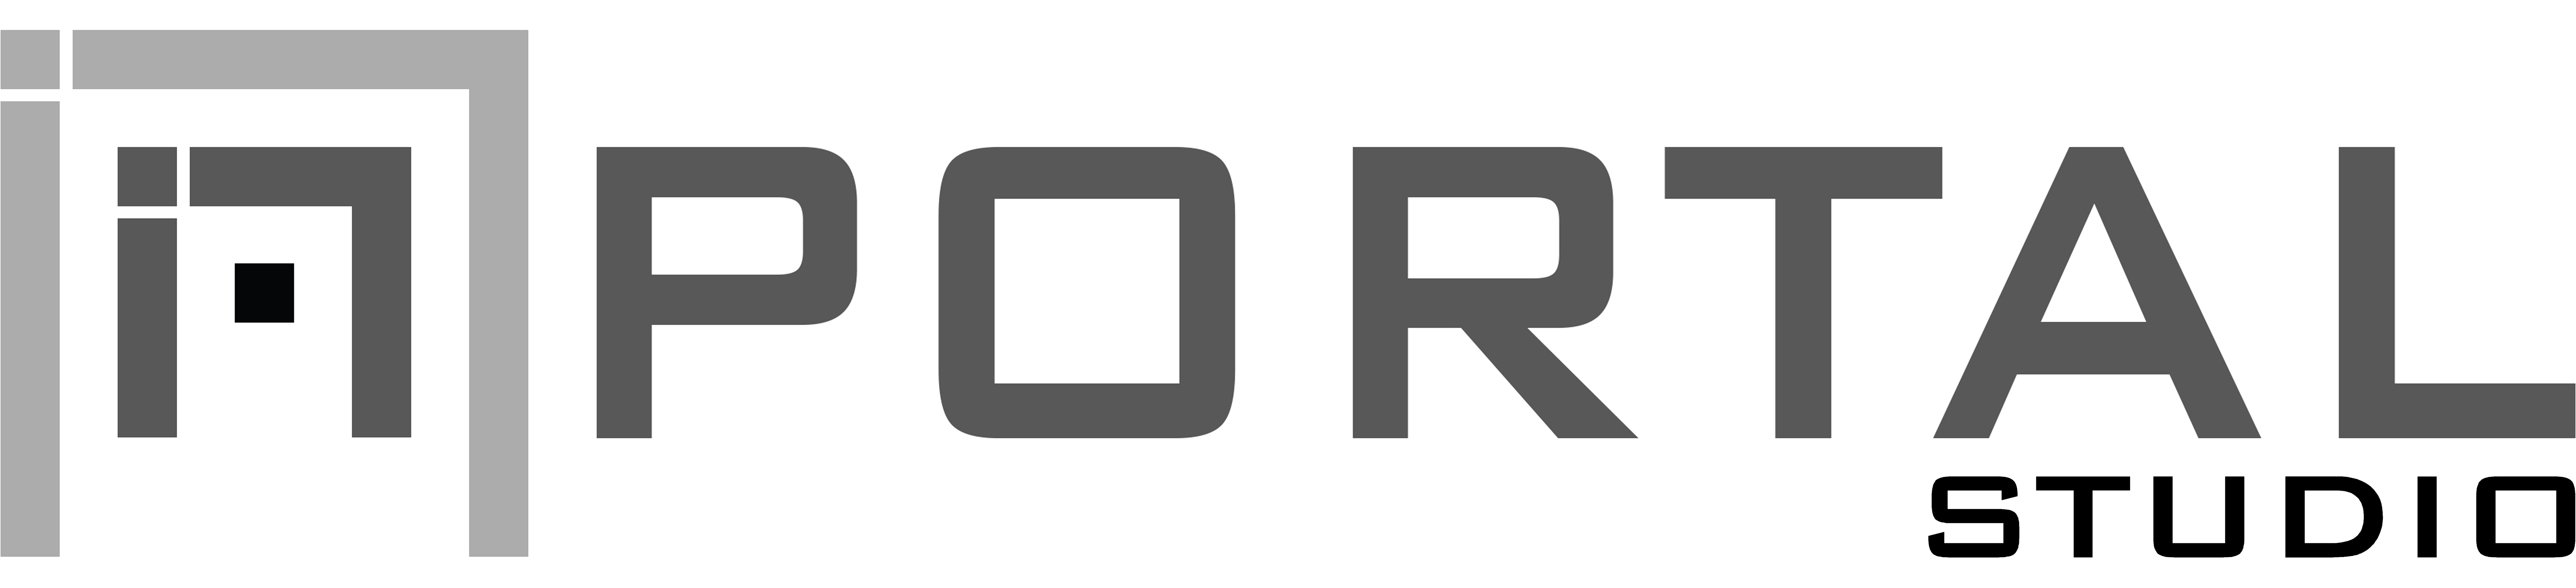 Portal studio logo